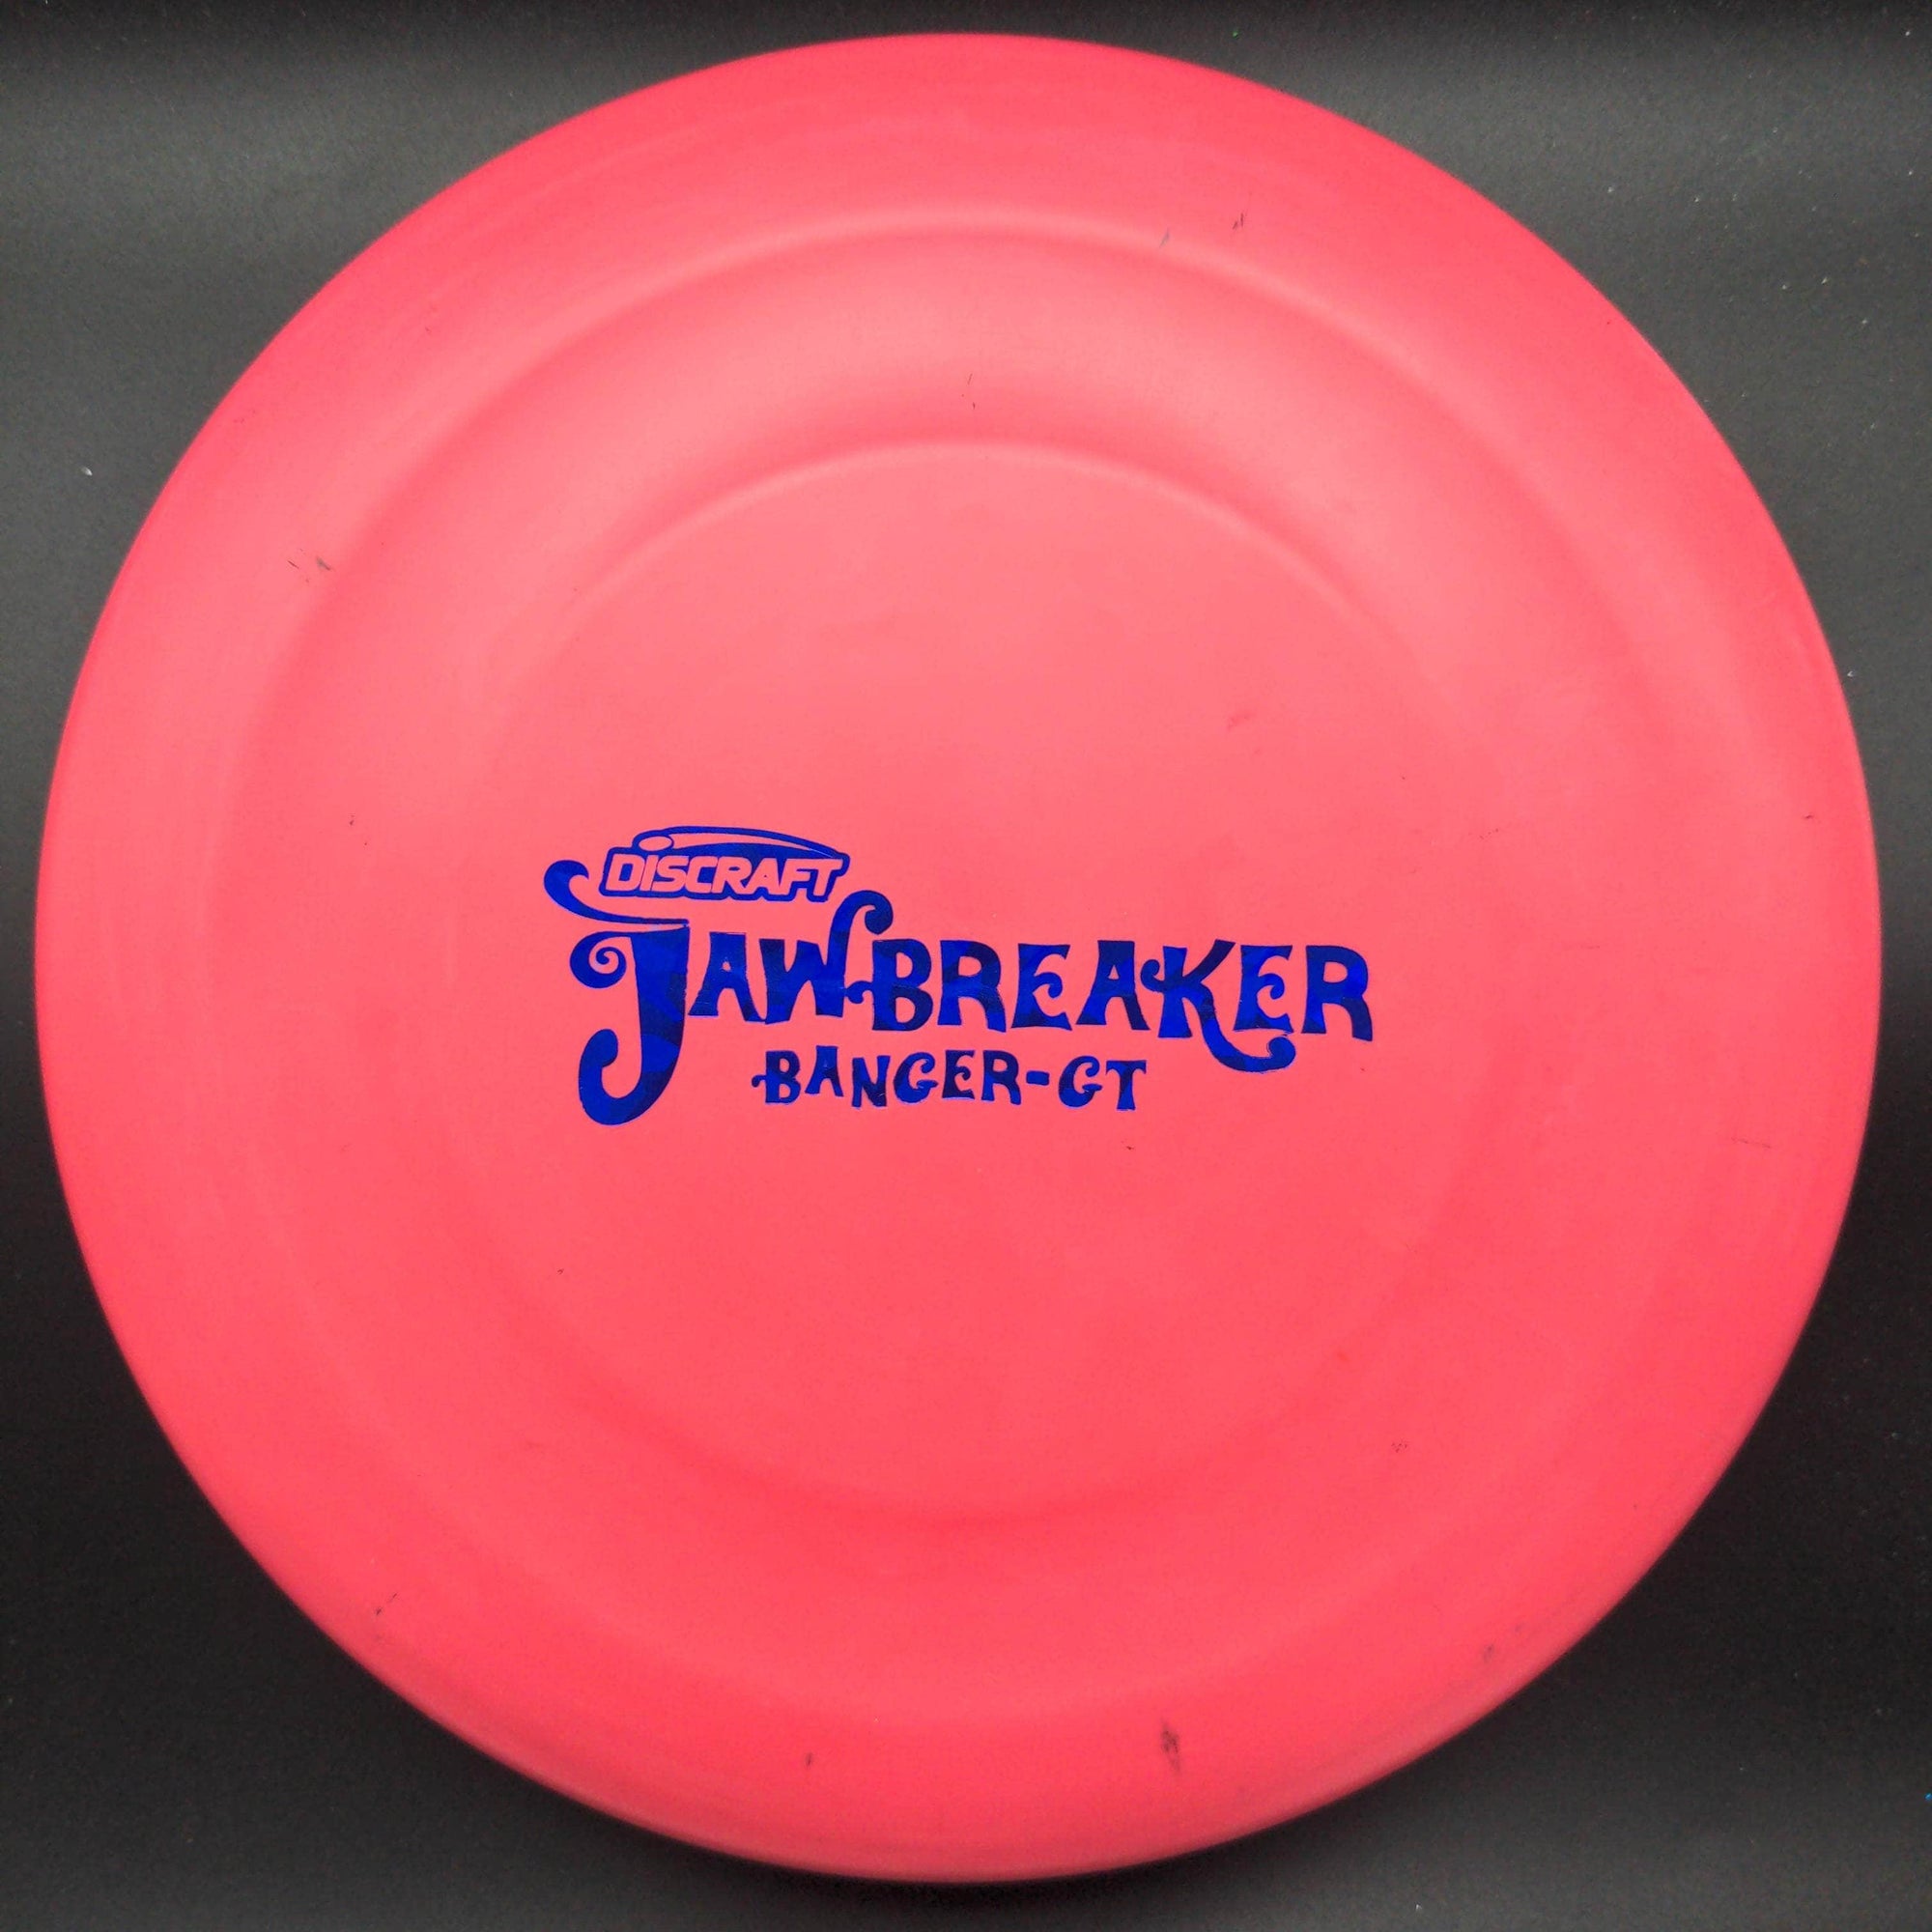 Discraft Putter Red/Pink Blue Stamp 172g Banger-GT, Jawbreaker